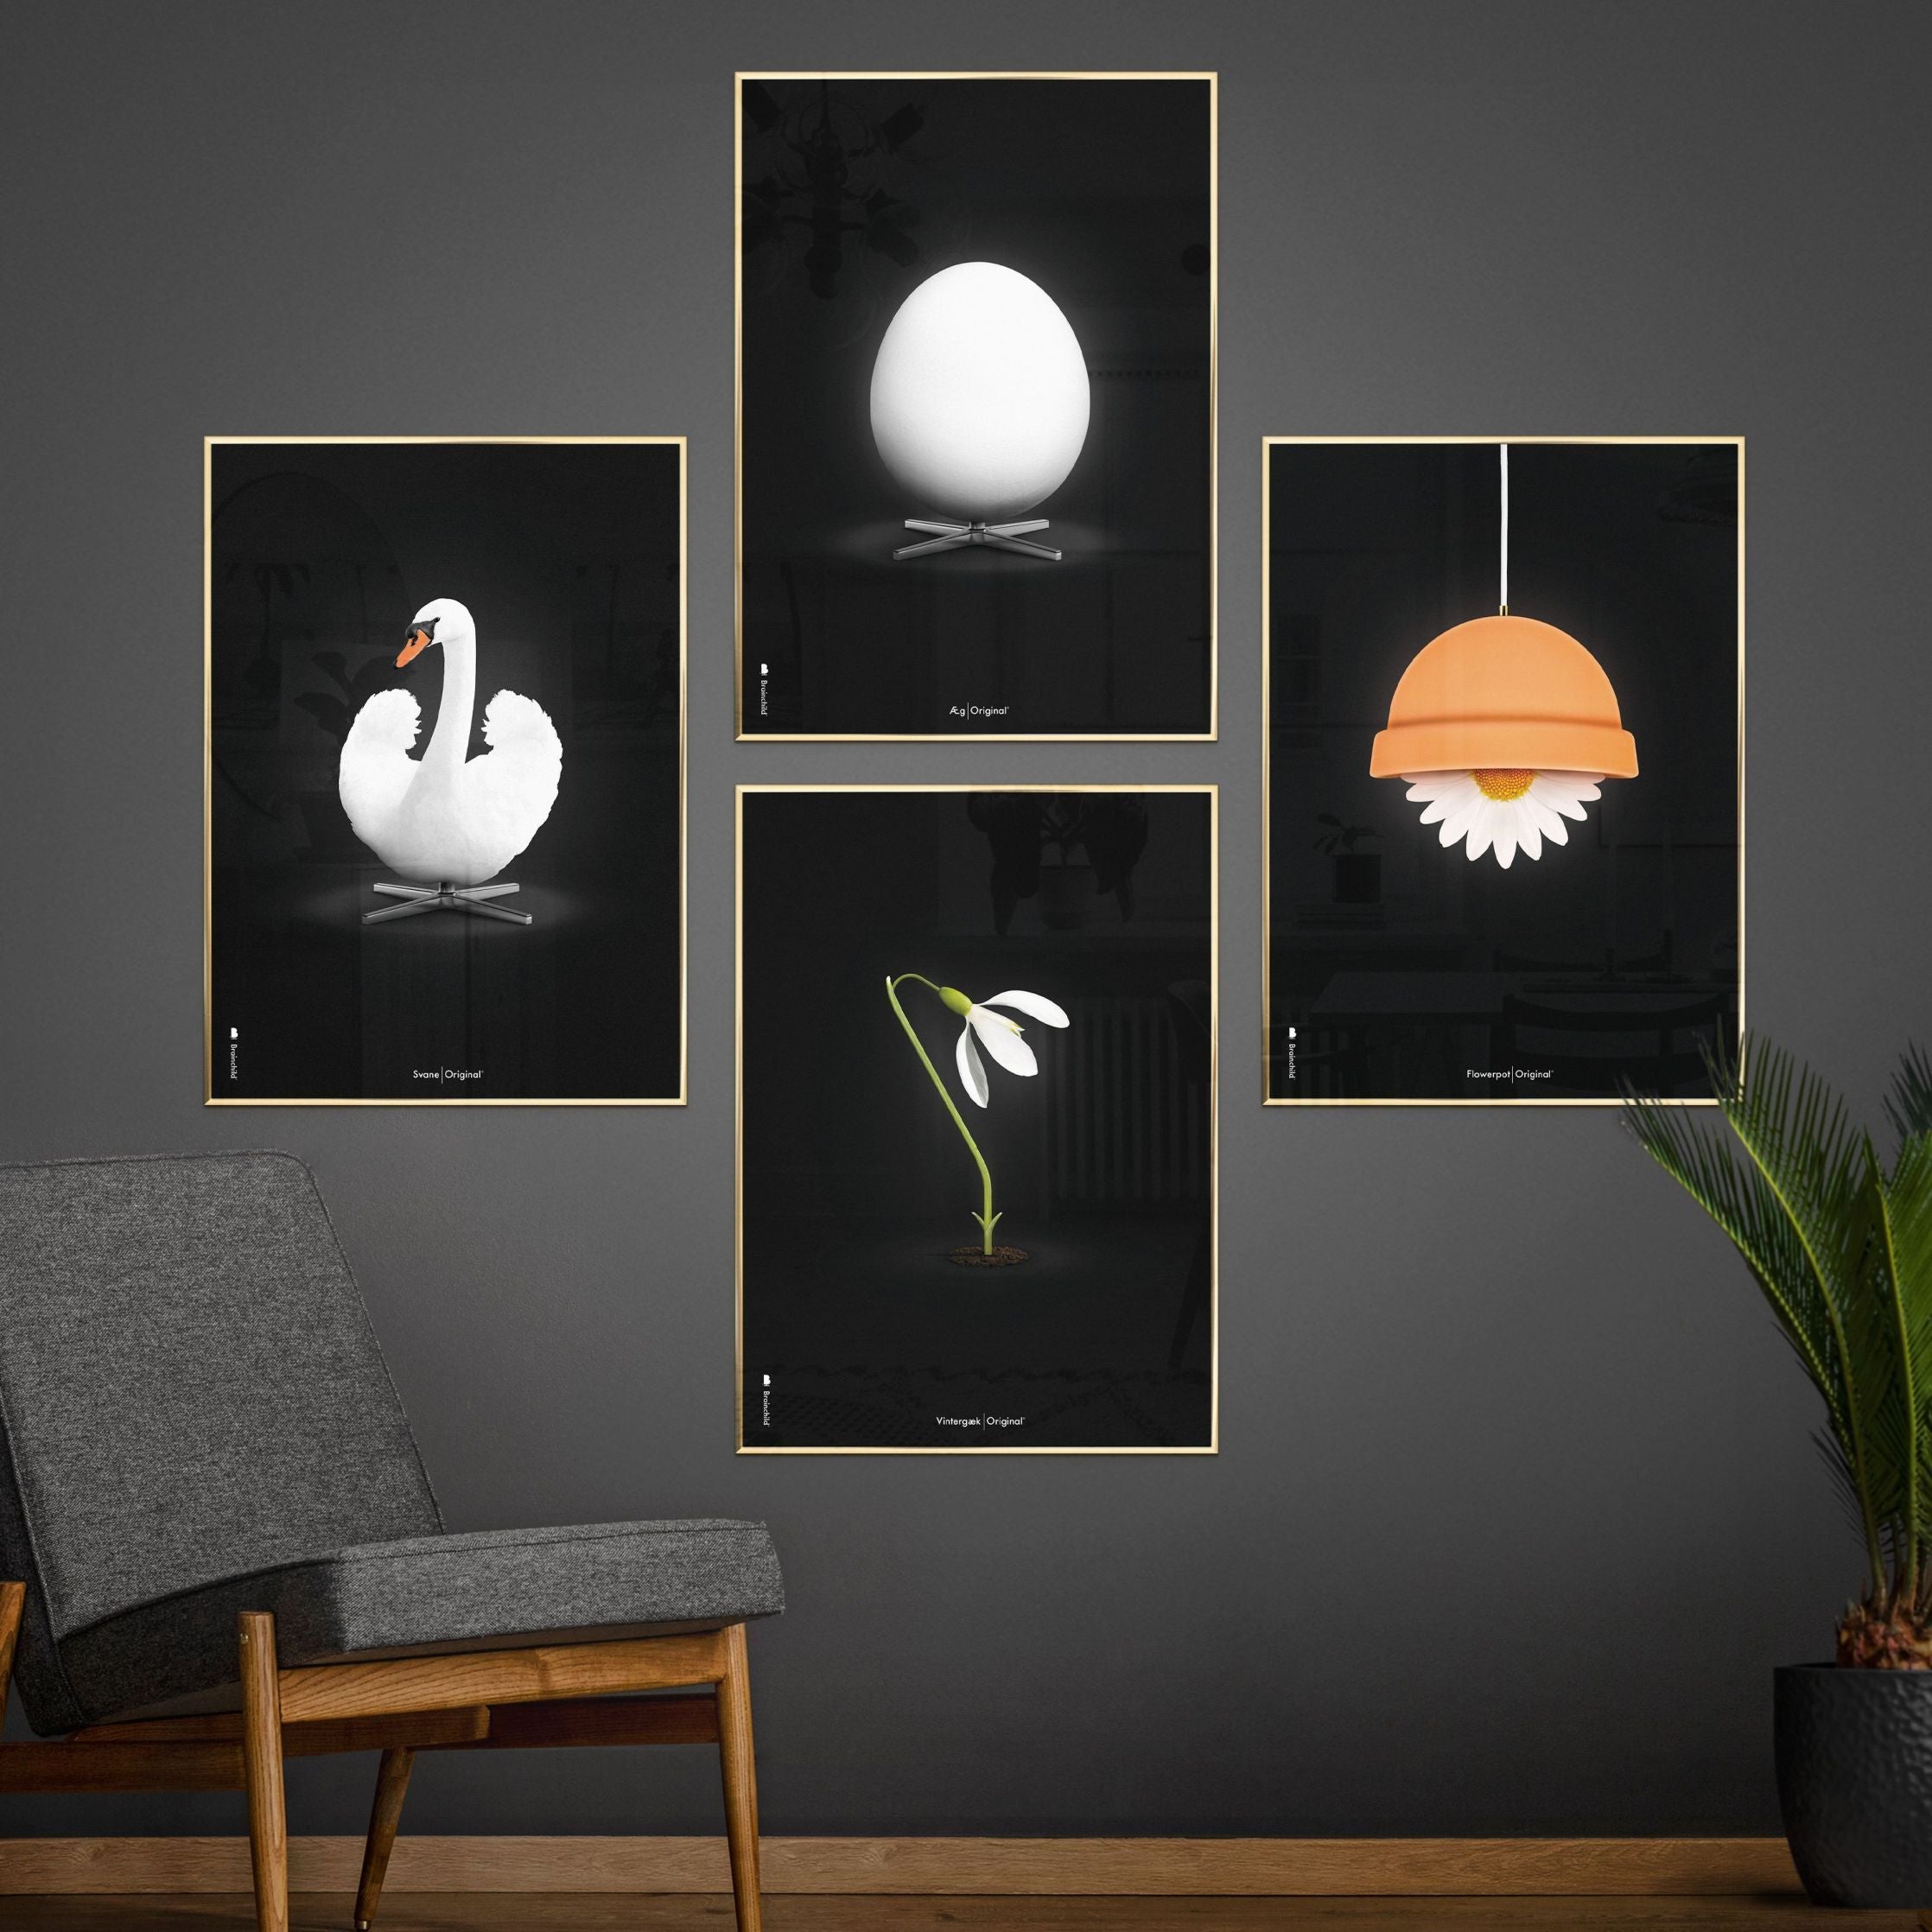 Brainchild Blumenpot klassisches Poster, Rahmen in schwarz lackiertem Holz 70x100 cm, schwarzer Hintergrund